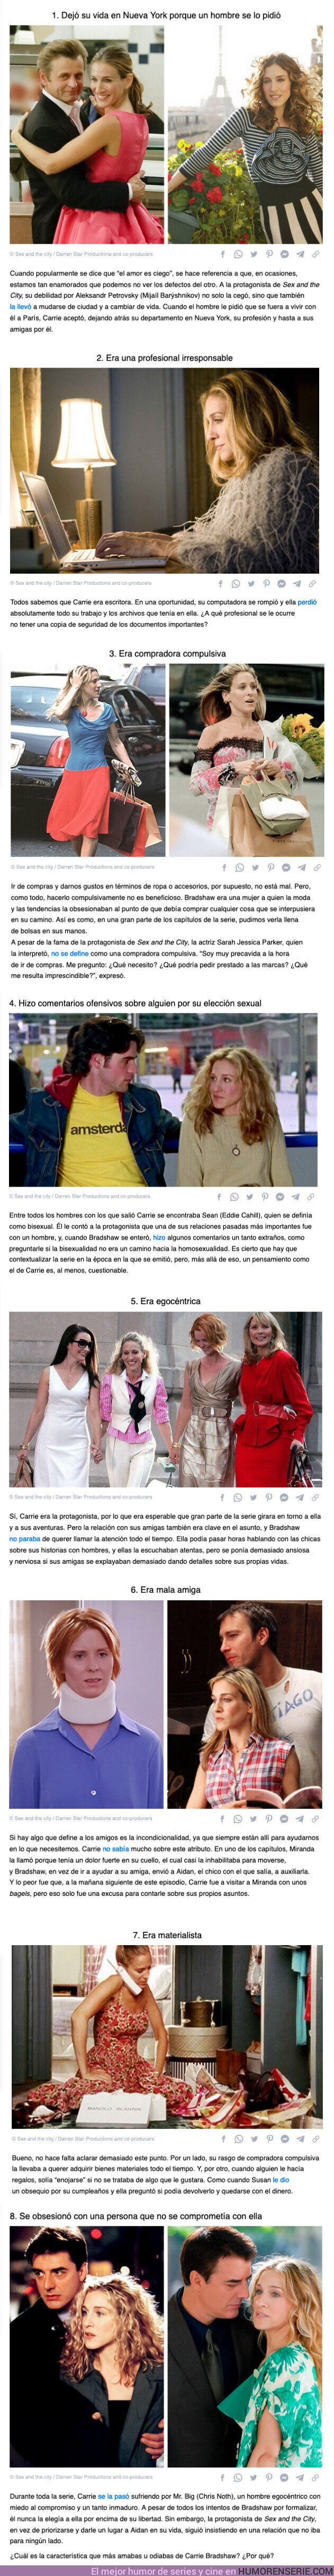 107481 - GALERÍA: 8 Motivos por los cuales Carrie Bradshaw no debería ser un modelo para ninguna mujer